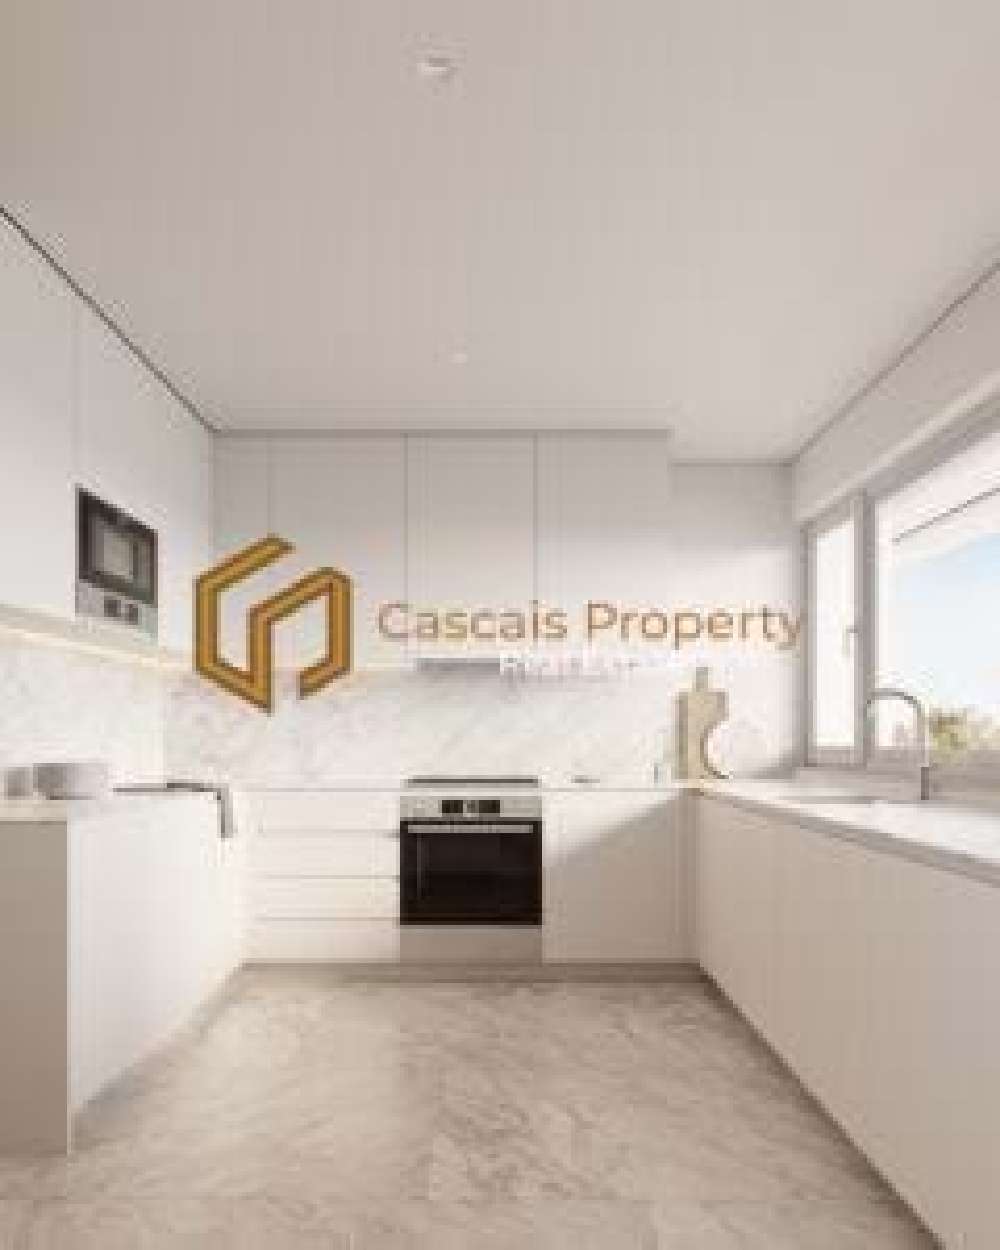  köpa lägenhet  Cascais  Cascais 8